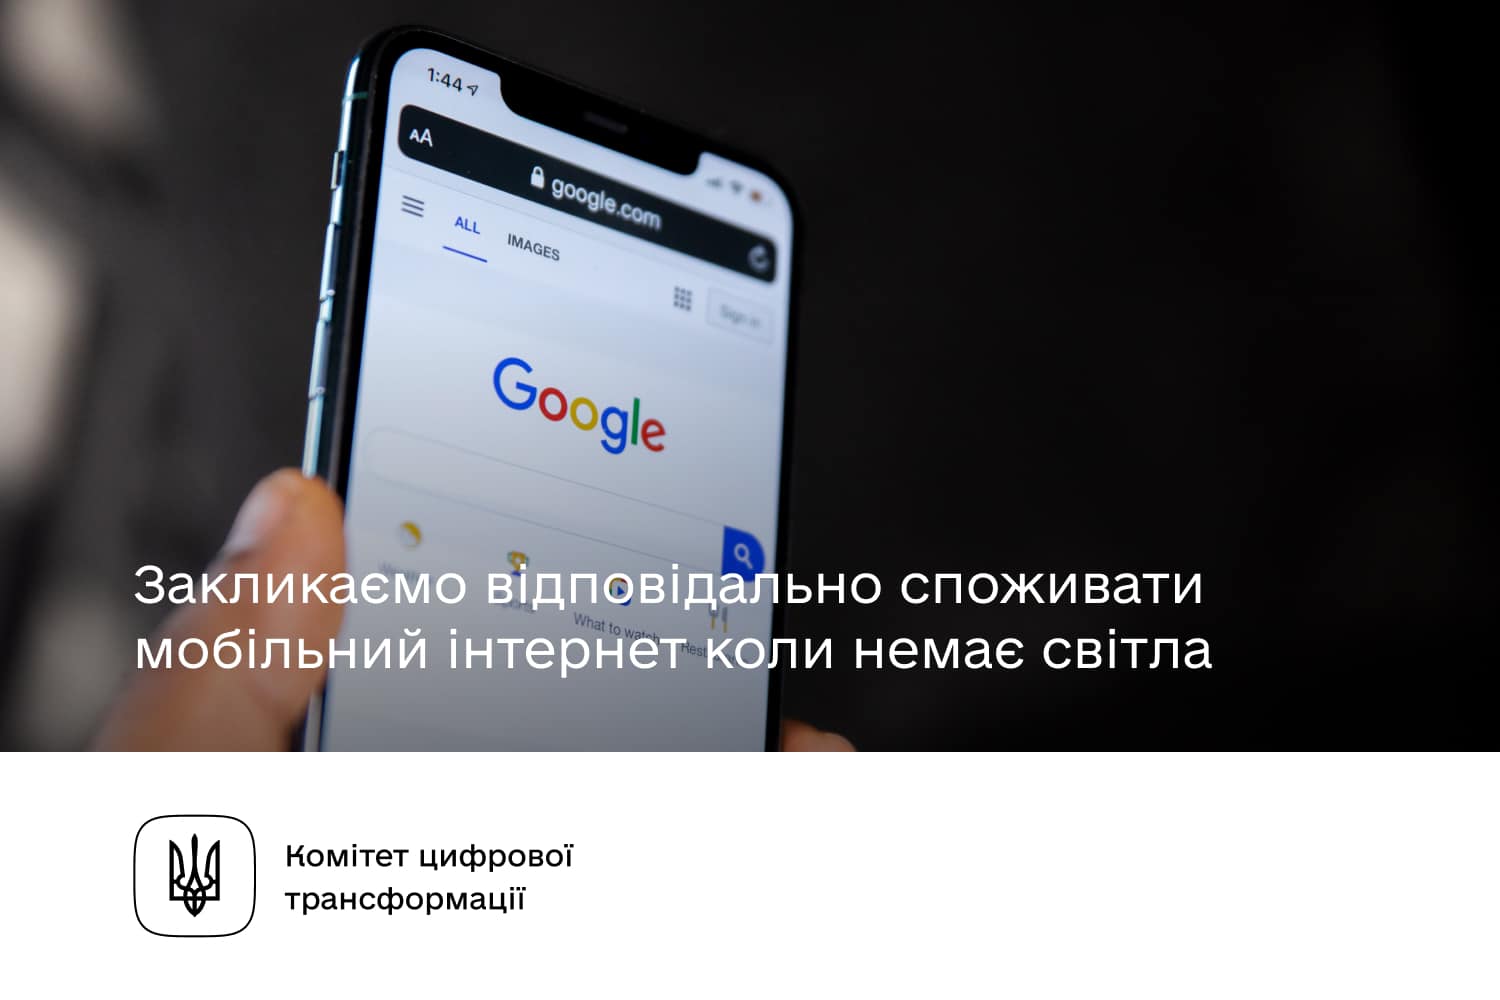 Комітет цифрової трансформації закликає українців відповідально споживати мобільний інтернет під час відключення світла